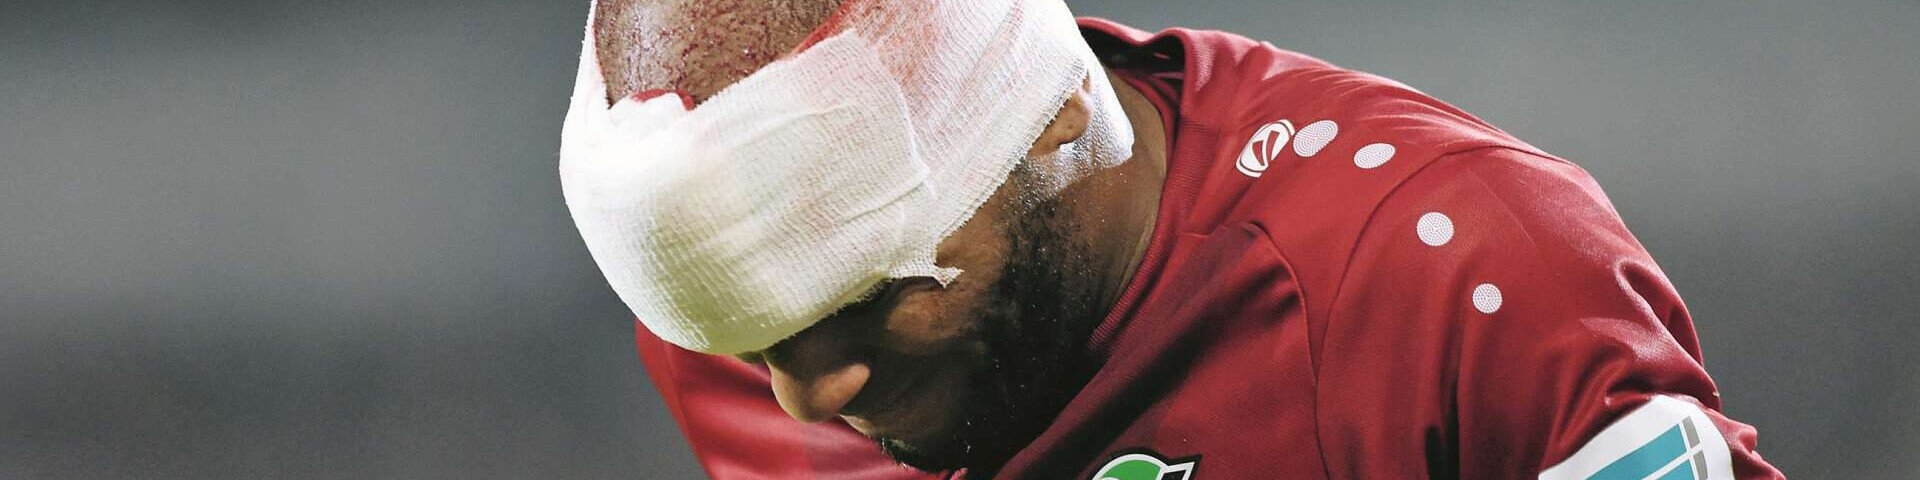 Am Kopf verletzter Fußballspieler mit Verband, 

Kopfverletzung Jimmy Briand, Fußball Bundesliga, Hannover 96 - Eintracht Frankfurt